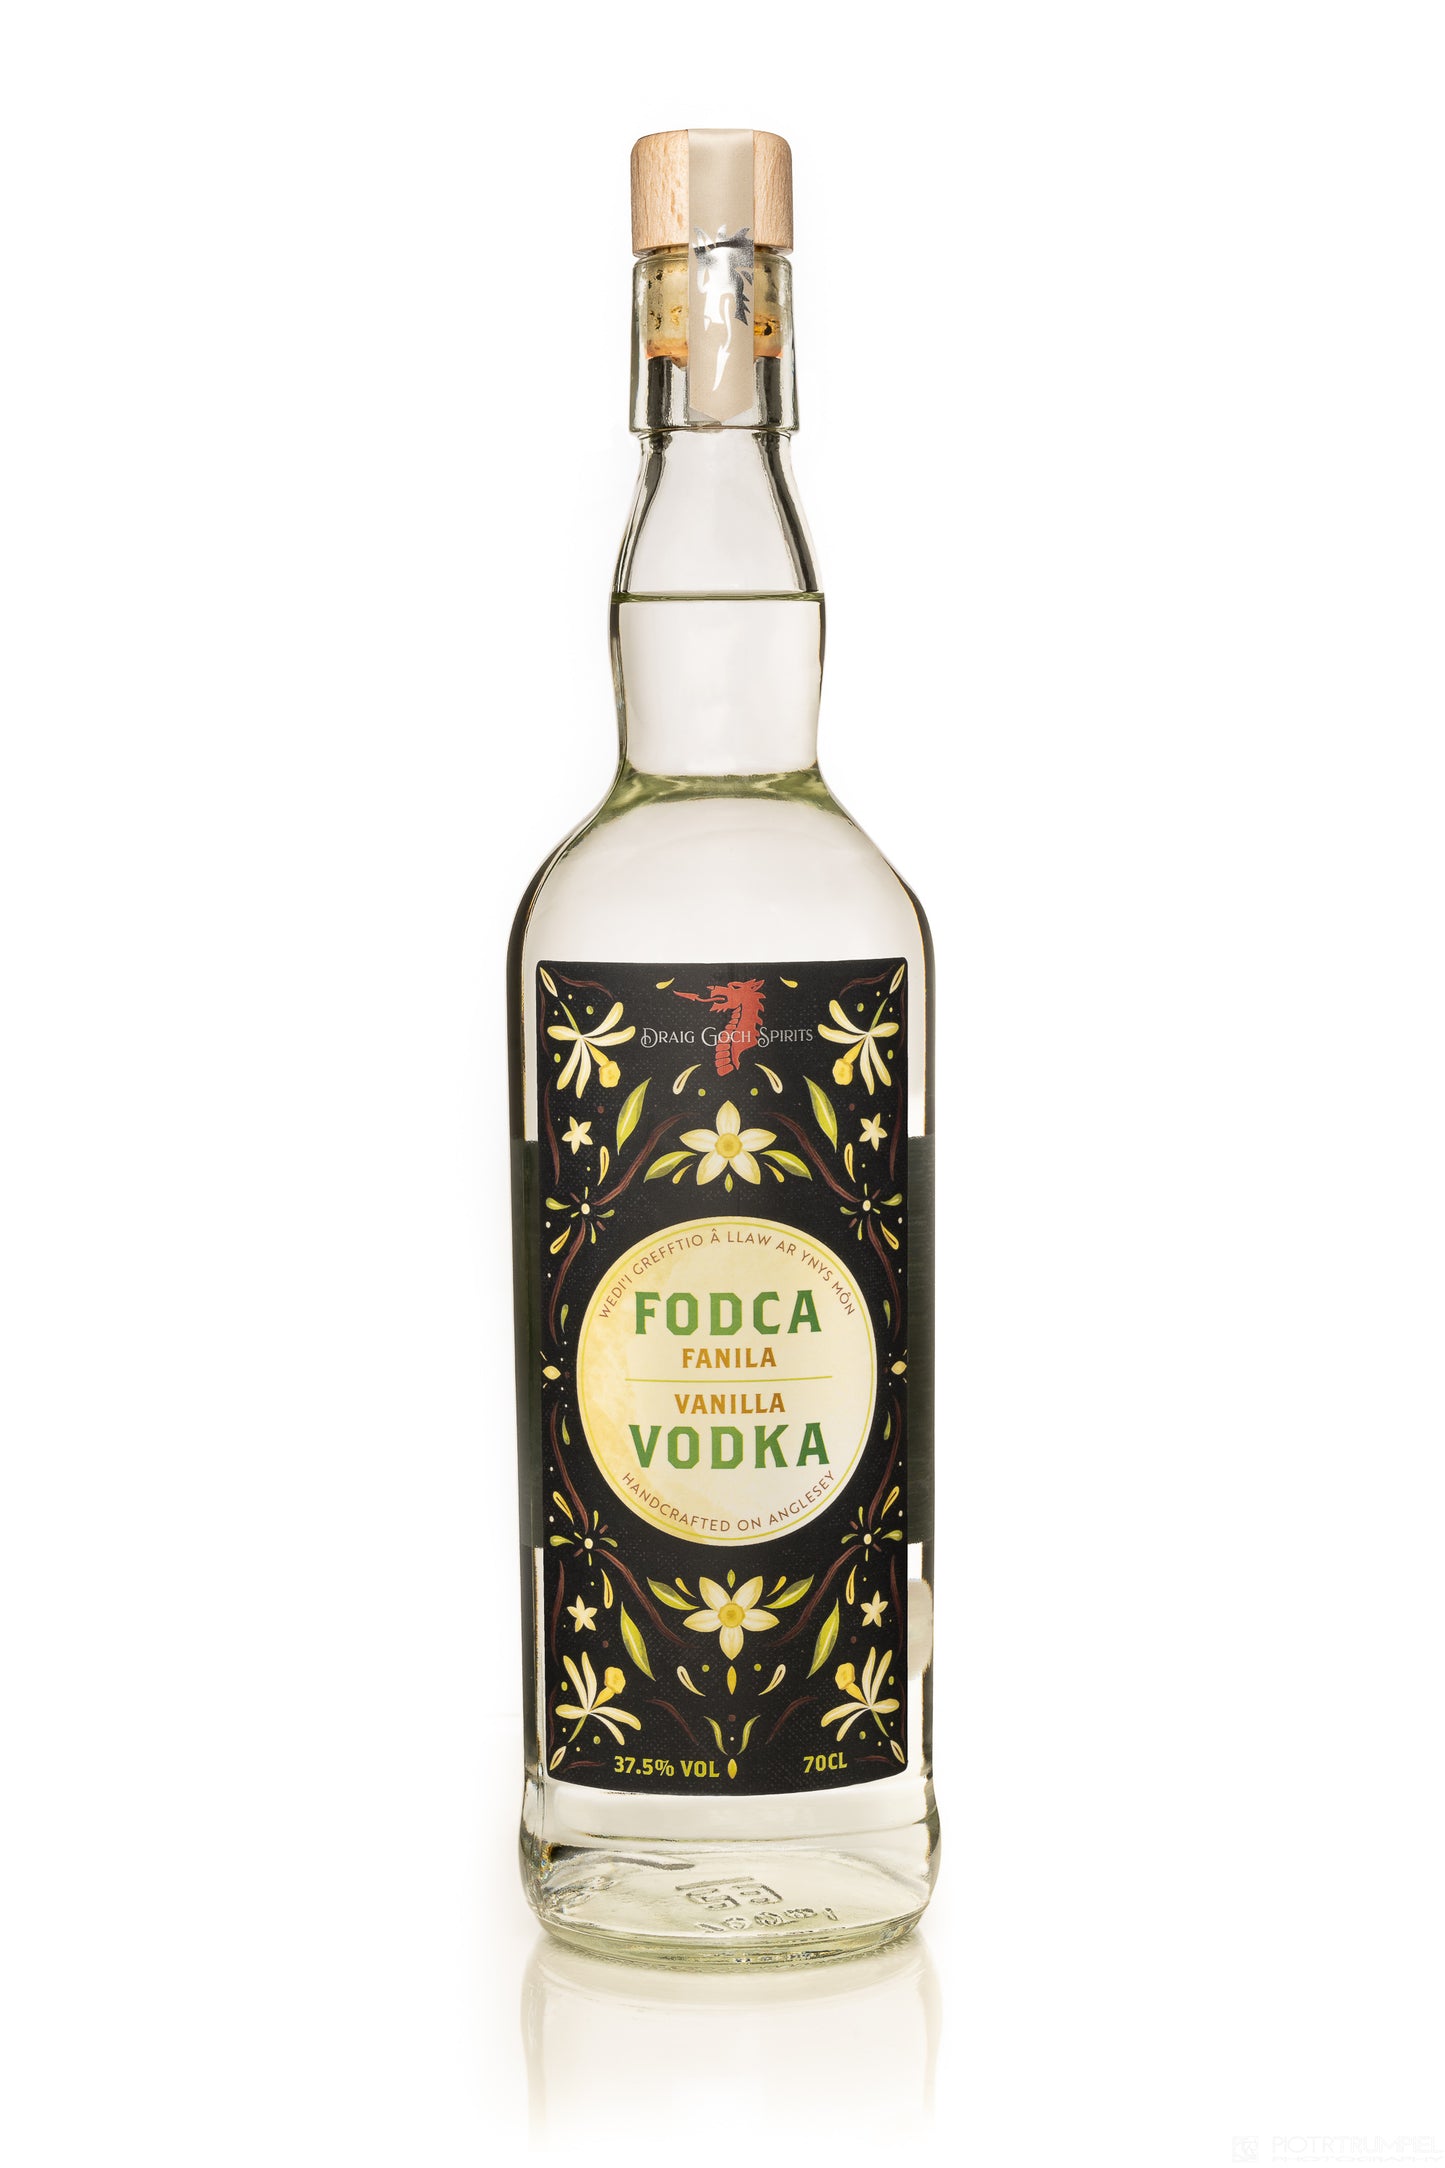 Draig Goch Vanilla Vodka - Fodca Fanila Draig Goch